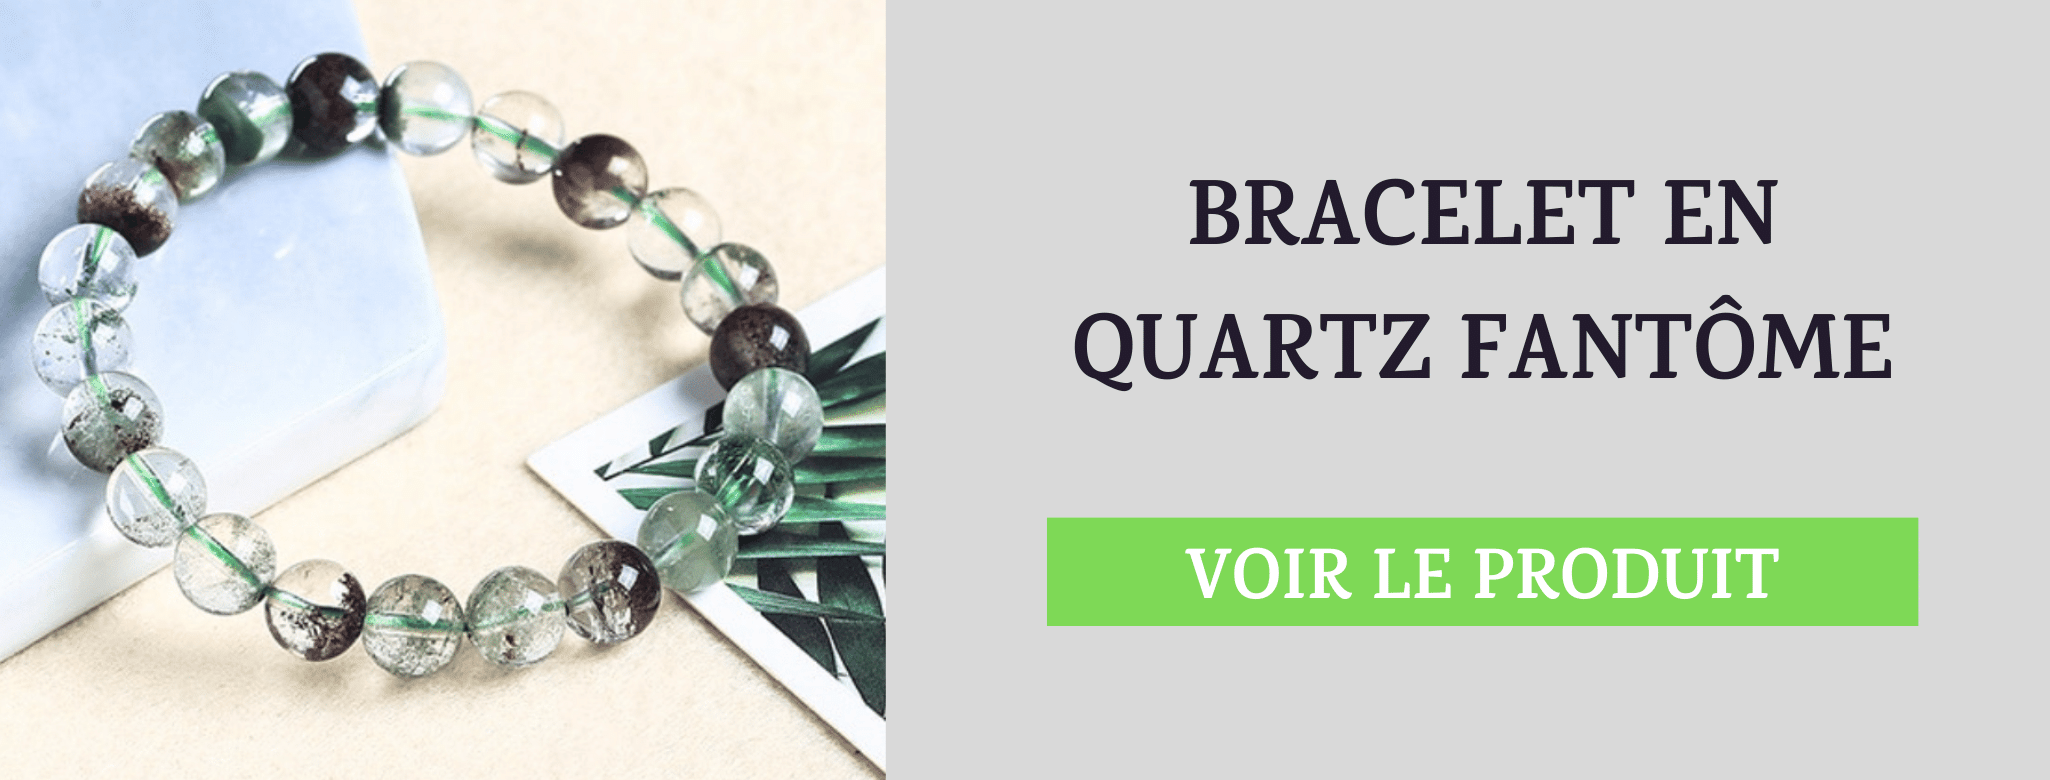 Bracelet Quartz Fantôme